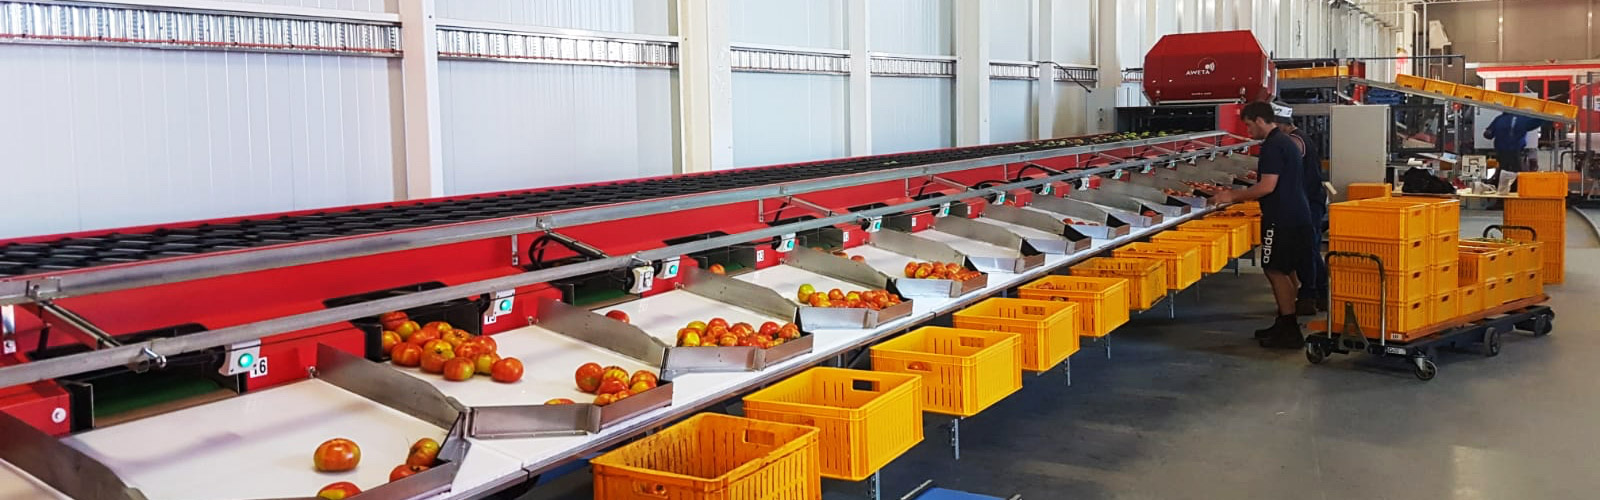 tomaten-sorteerlijn-australie-steenks-service